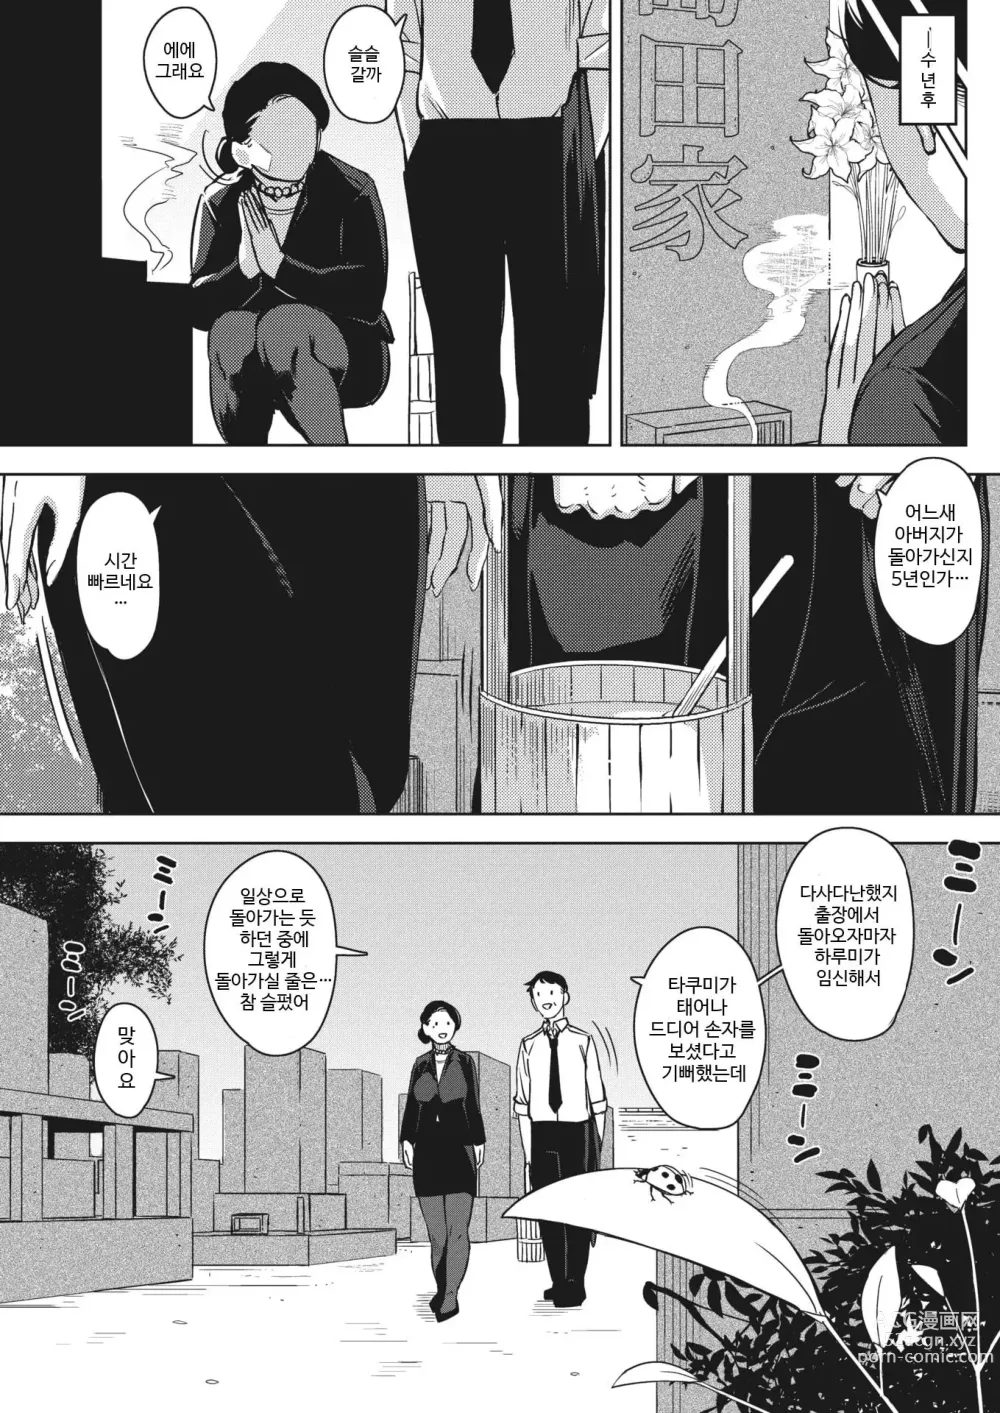 Page 199 of manga Hitozuma no Koukishin